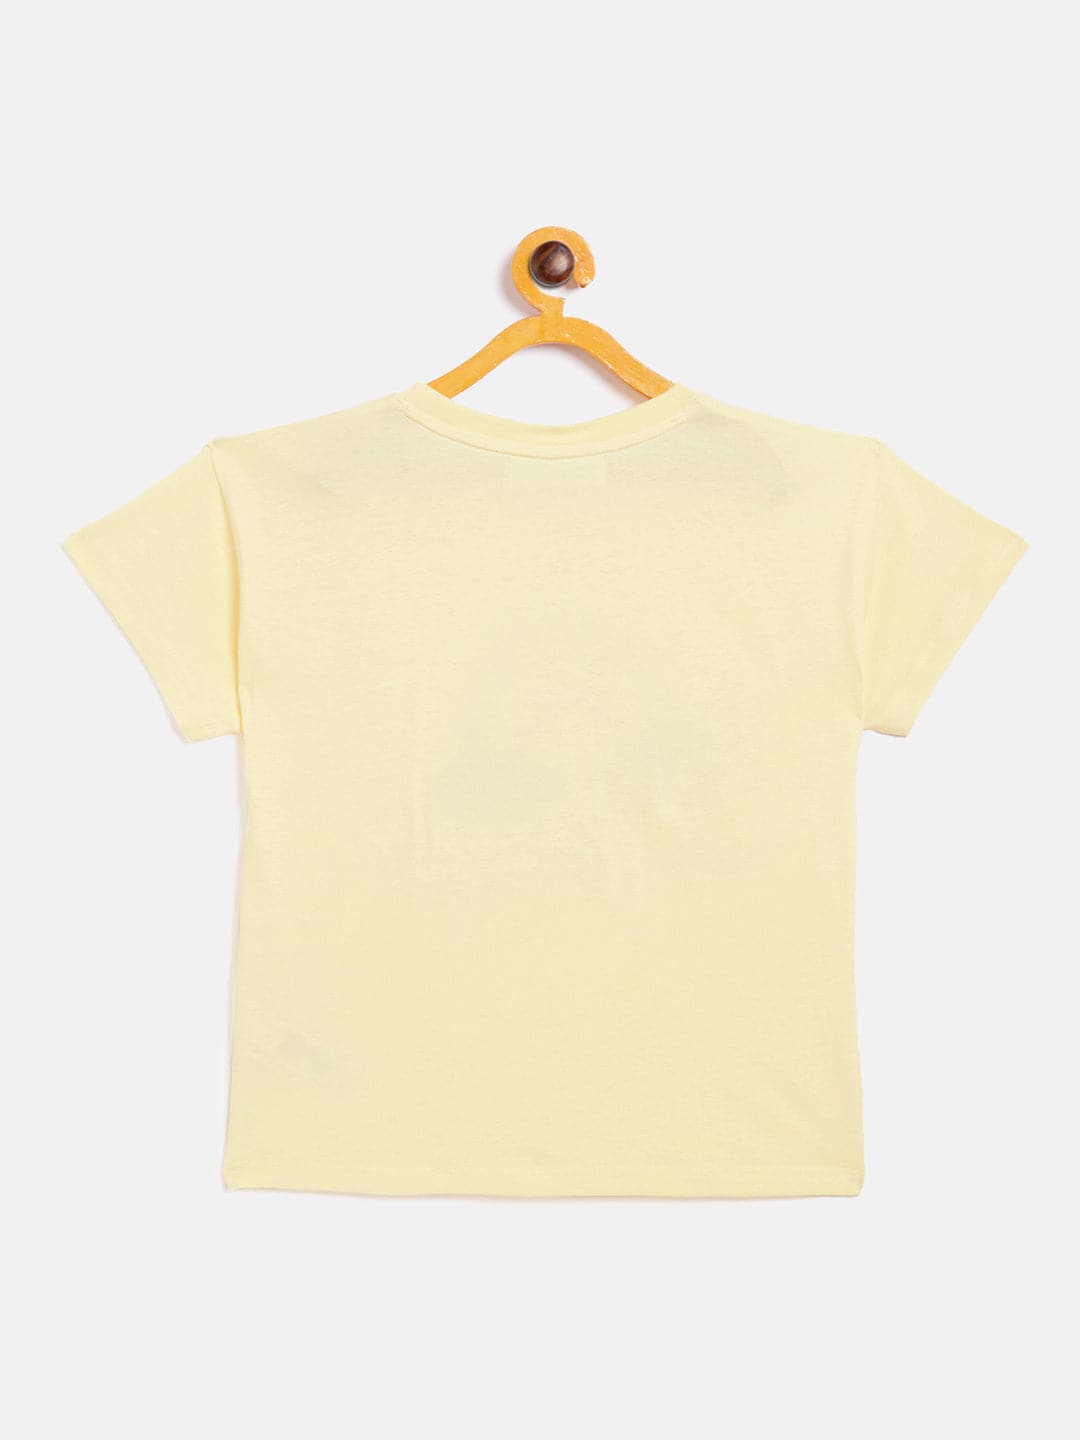 Girls Yellow Rainbow T-Shirt - Lyush Kids